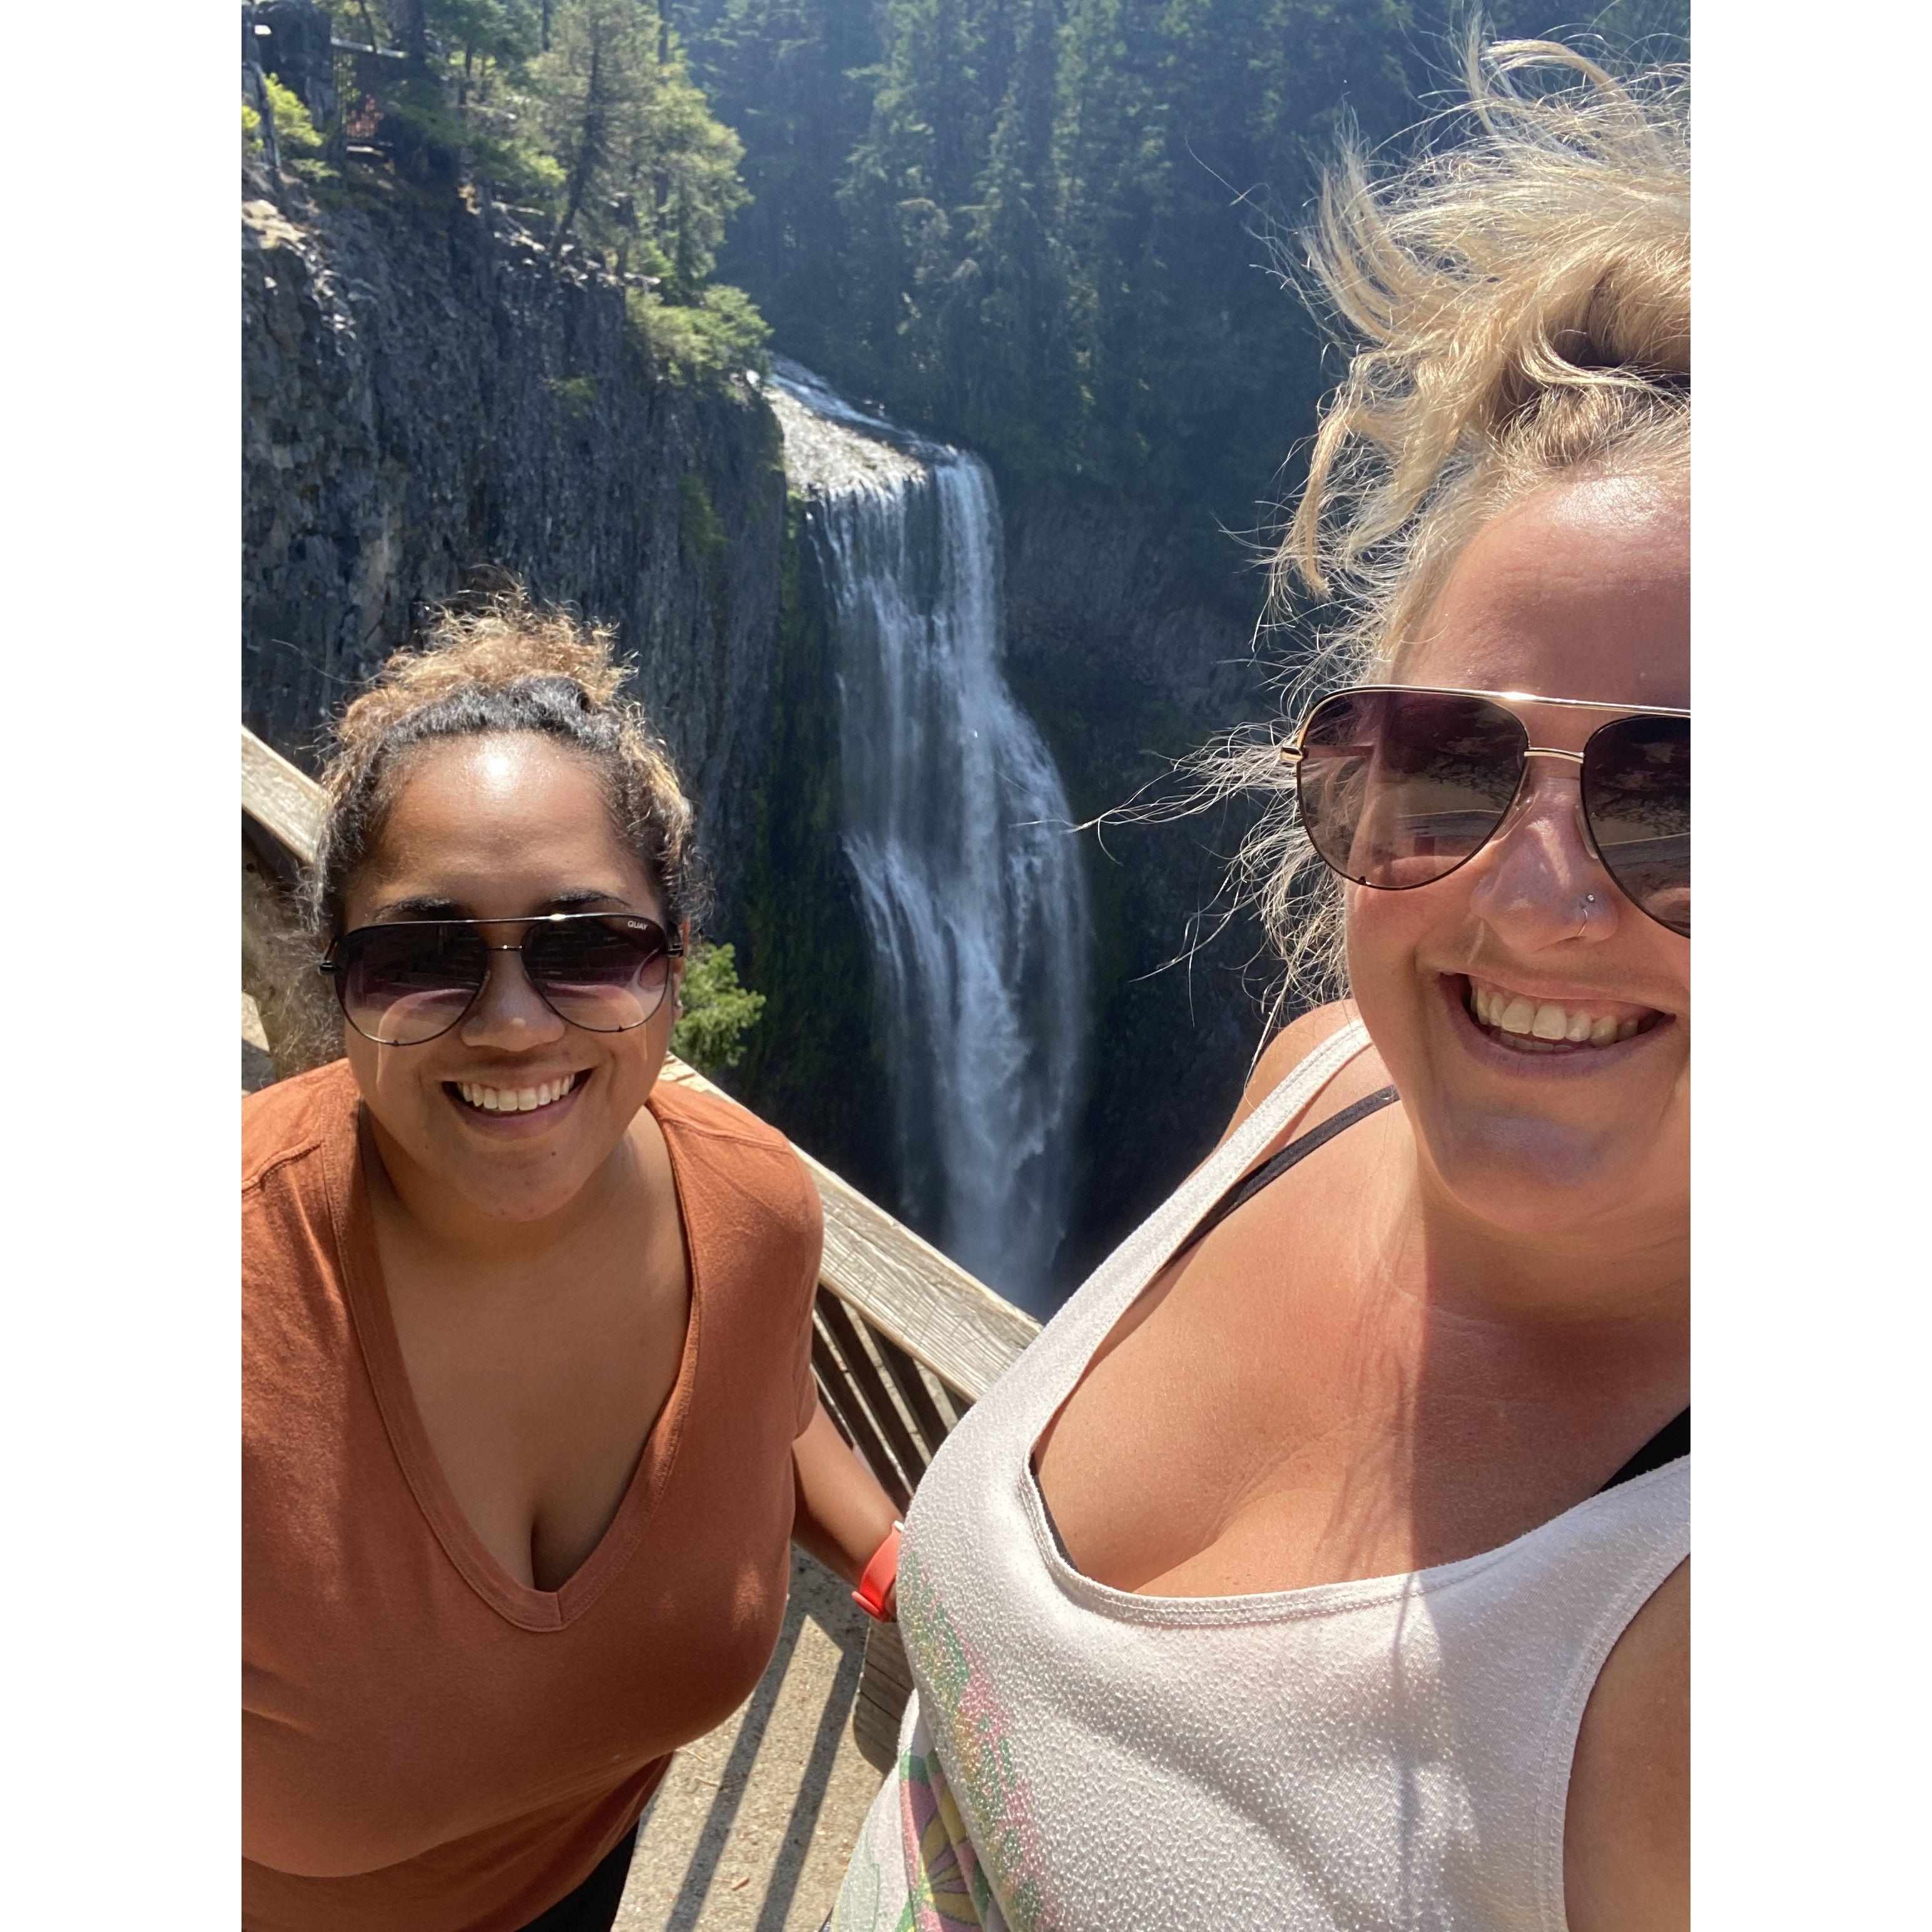 Salt Creek Falls, Oregon